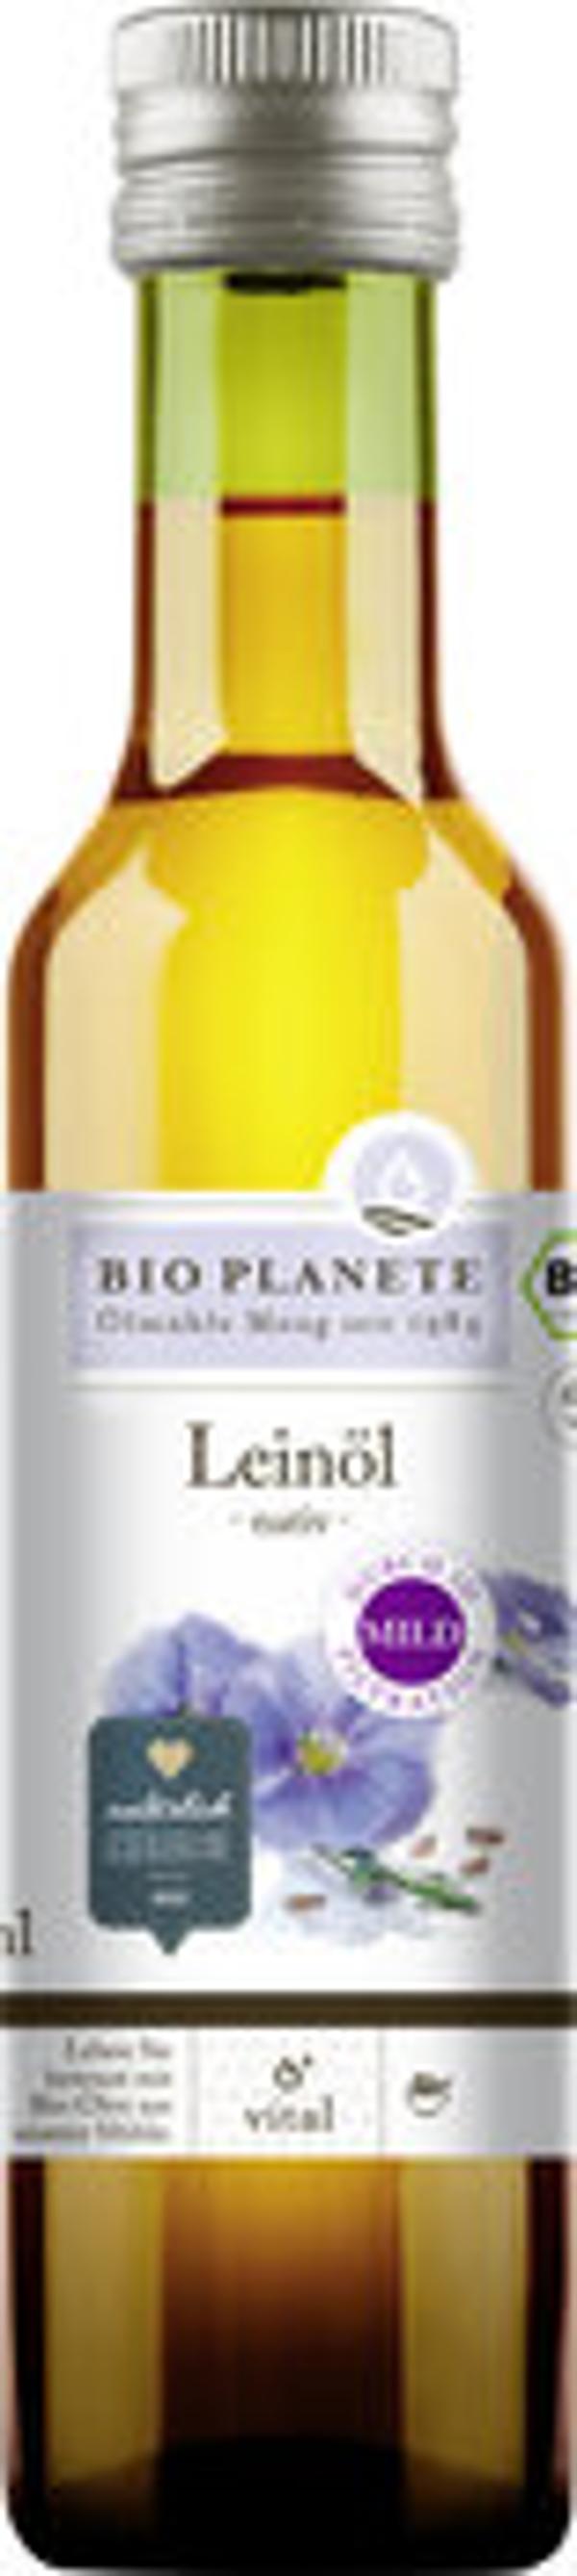 Produktbild von Bio Planète Leinöl nativ mild 250ml